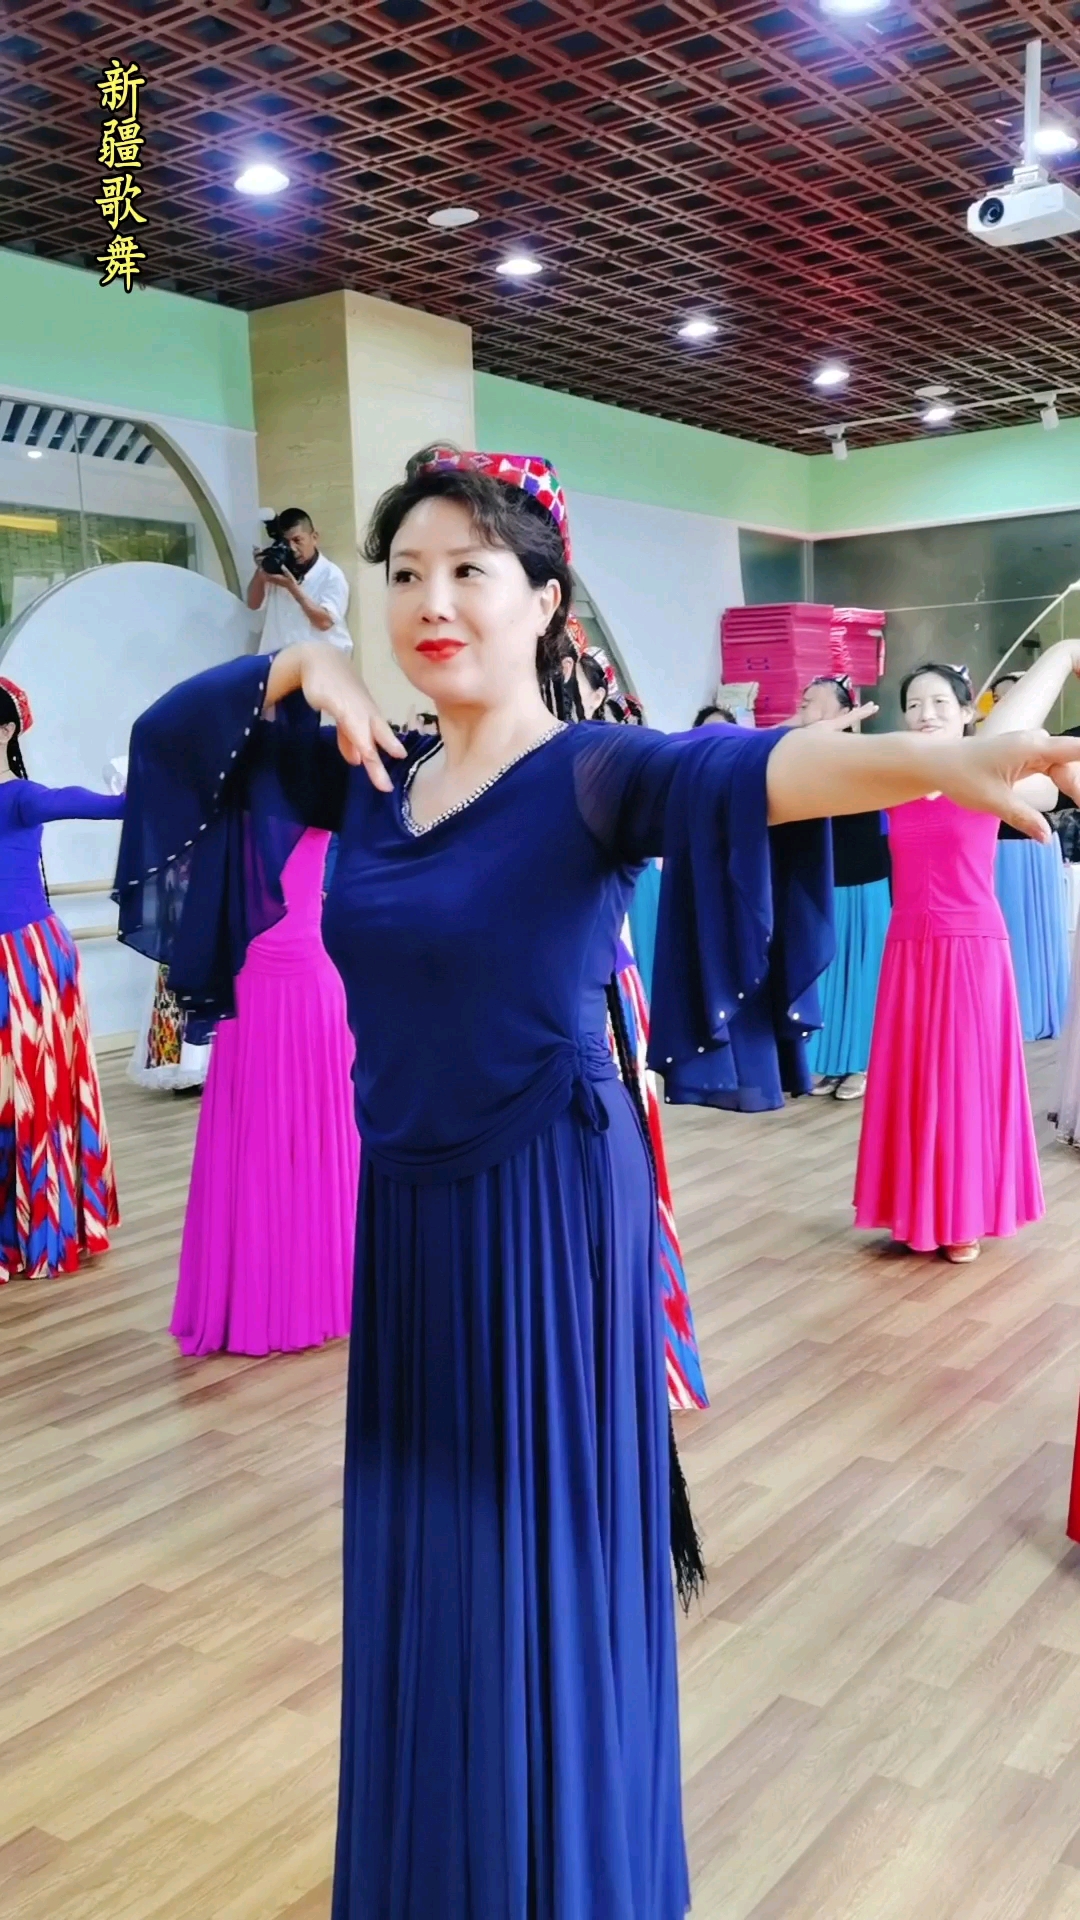 看这新疆舞跳的赞山西琦琦老师新疆舞教学课堂随拍